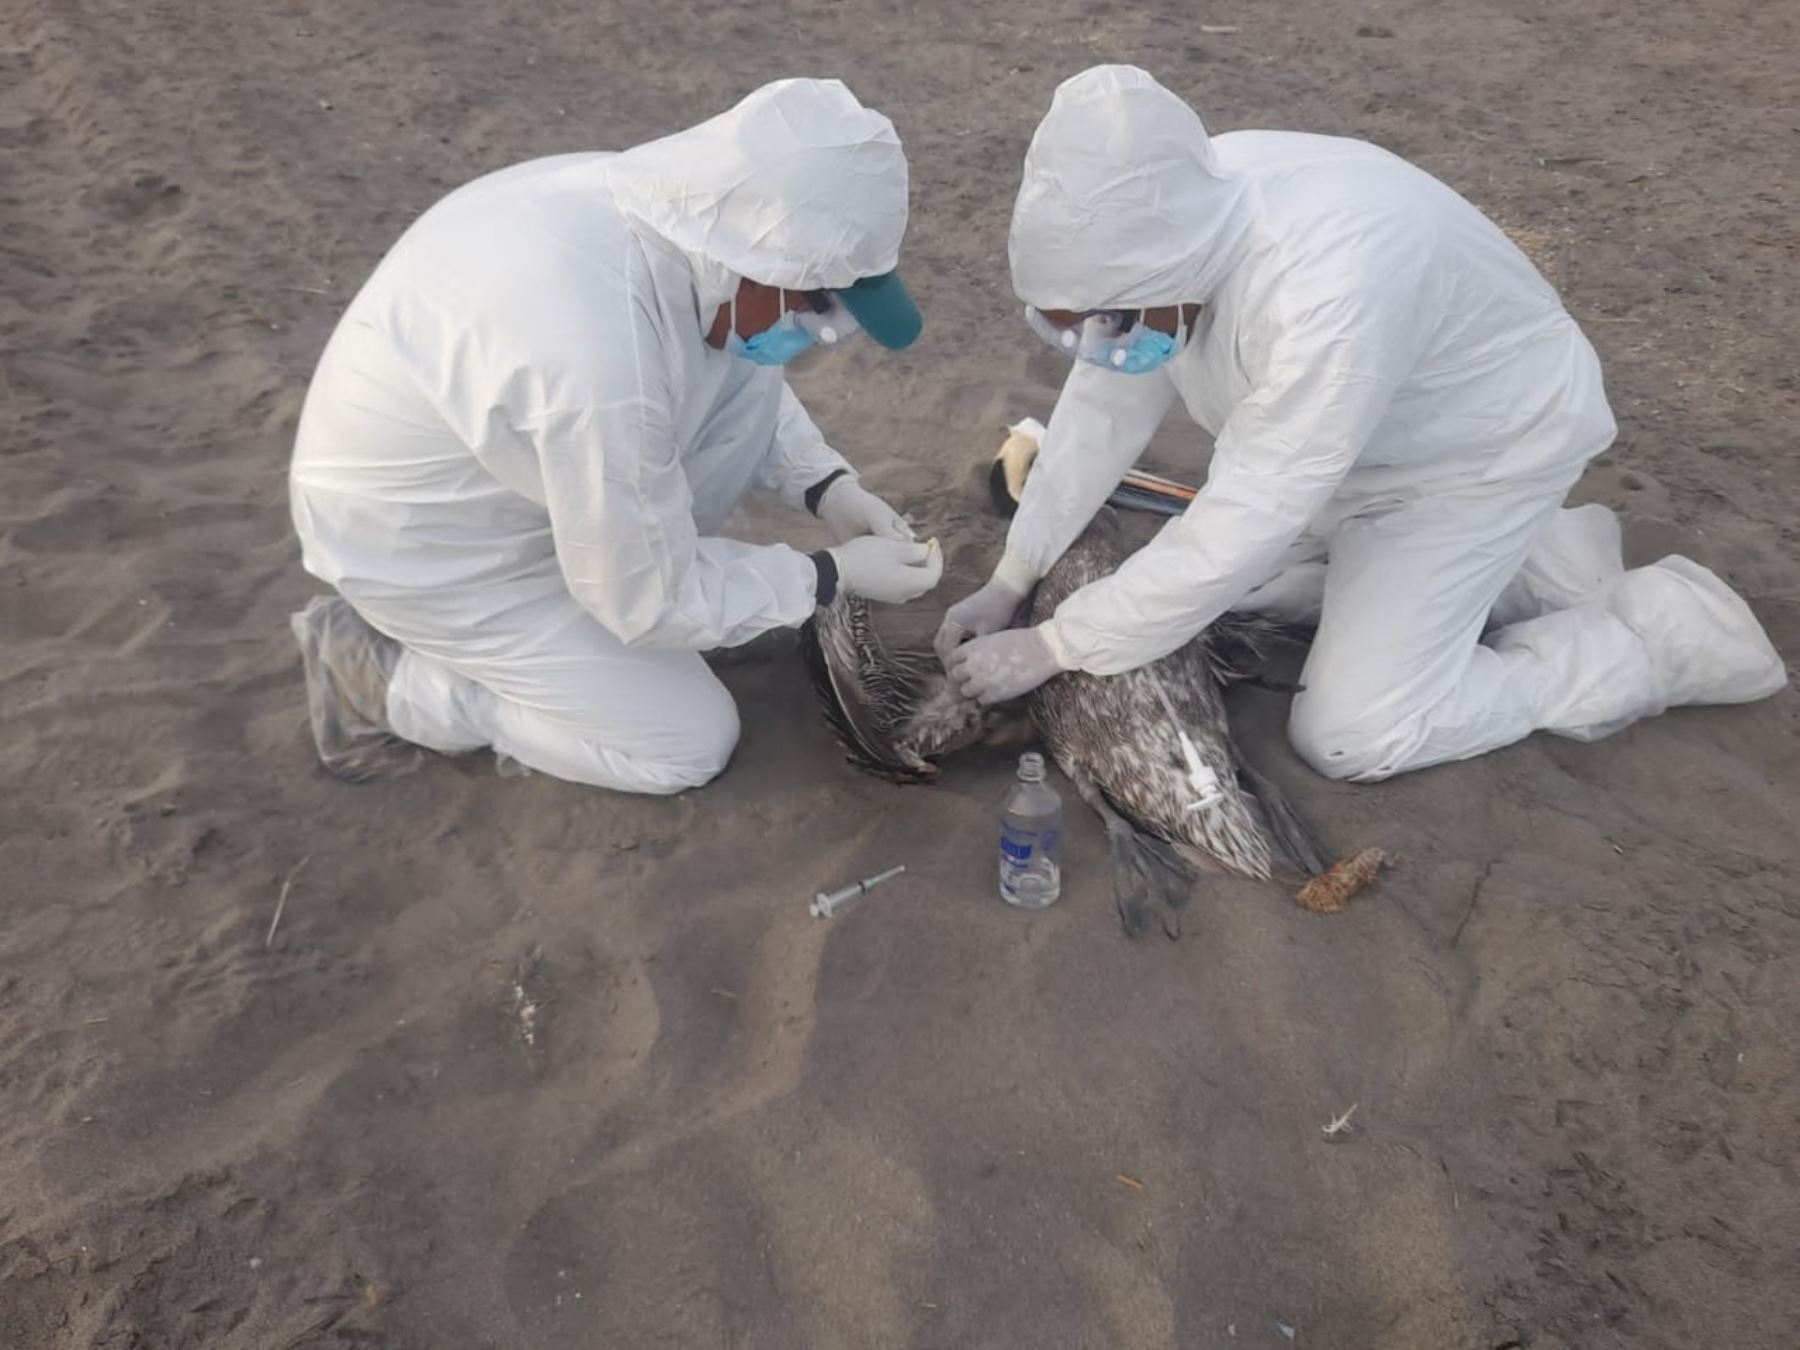 El Perú se encuentra en emergencia sanitaria por la gripe aviar, por lo que se recomienda extremar las medidas de seguridad. Foto: ANDINA/Difusión